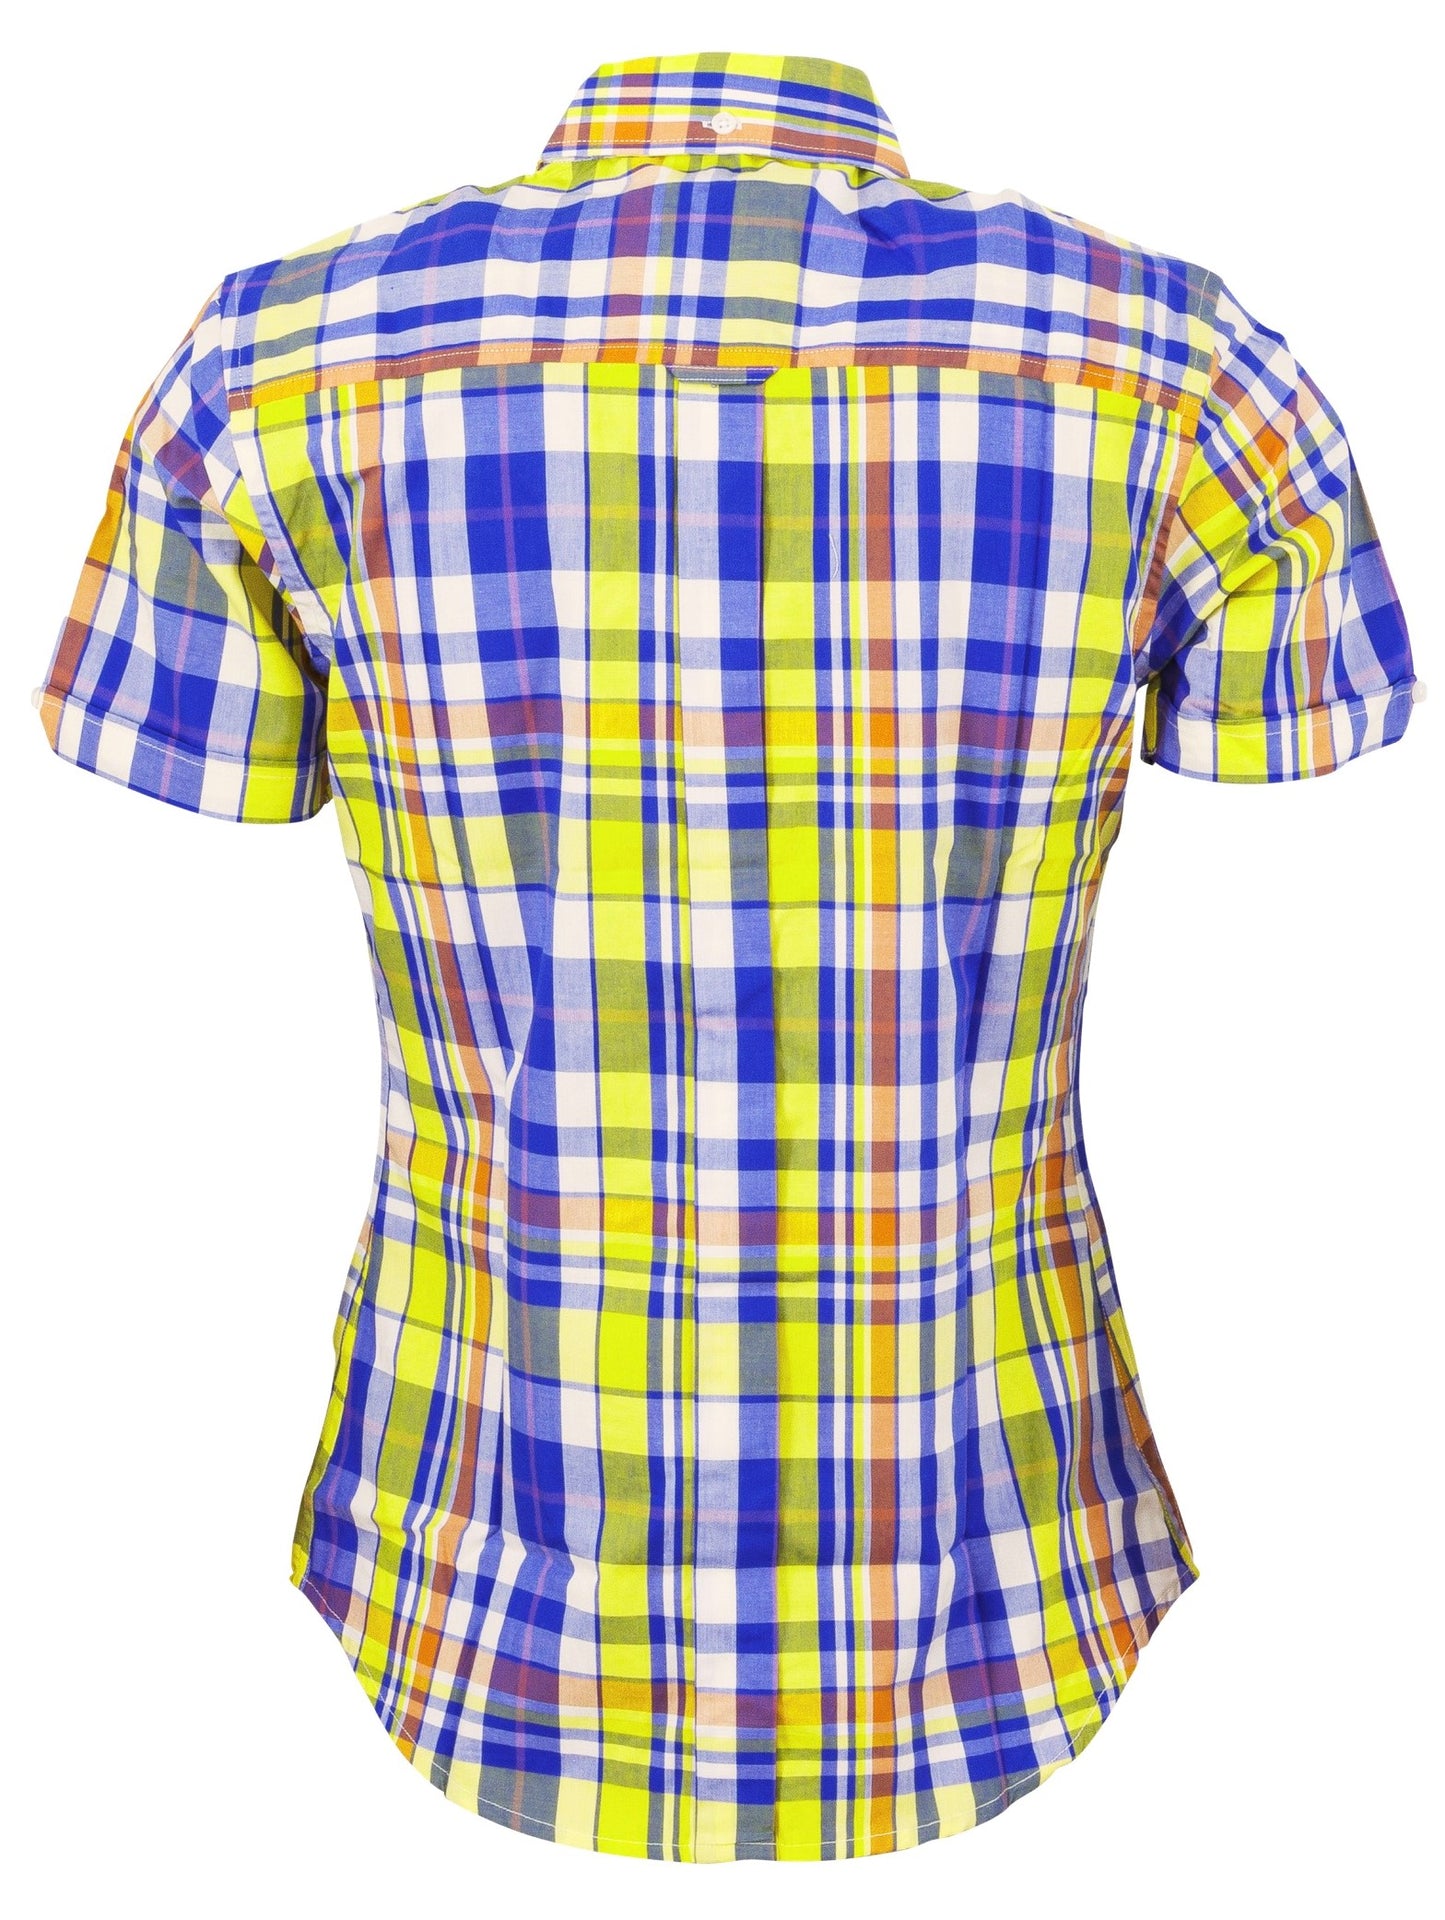 Relco Damen Retro-Kurzarmhemden mit mehrfarbigem Karomuster und Knöpfen